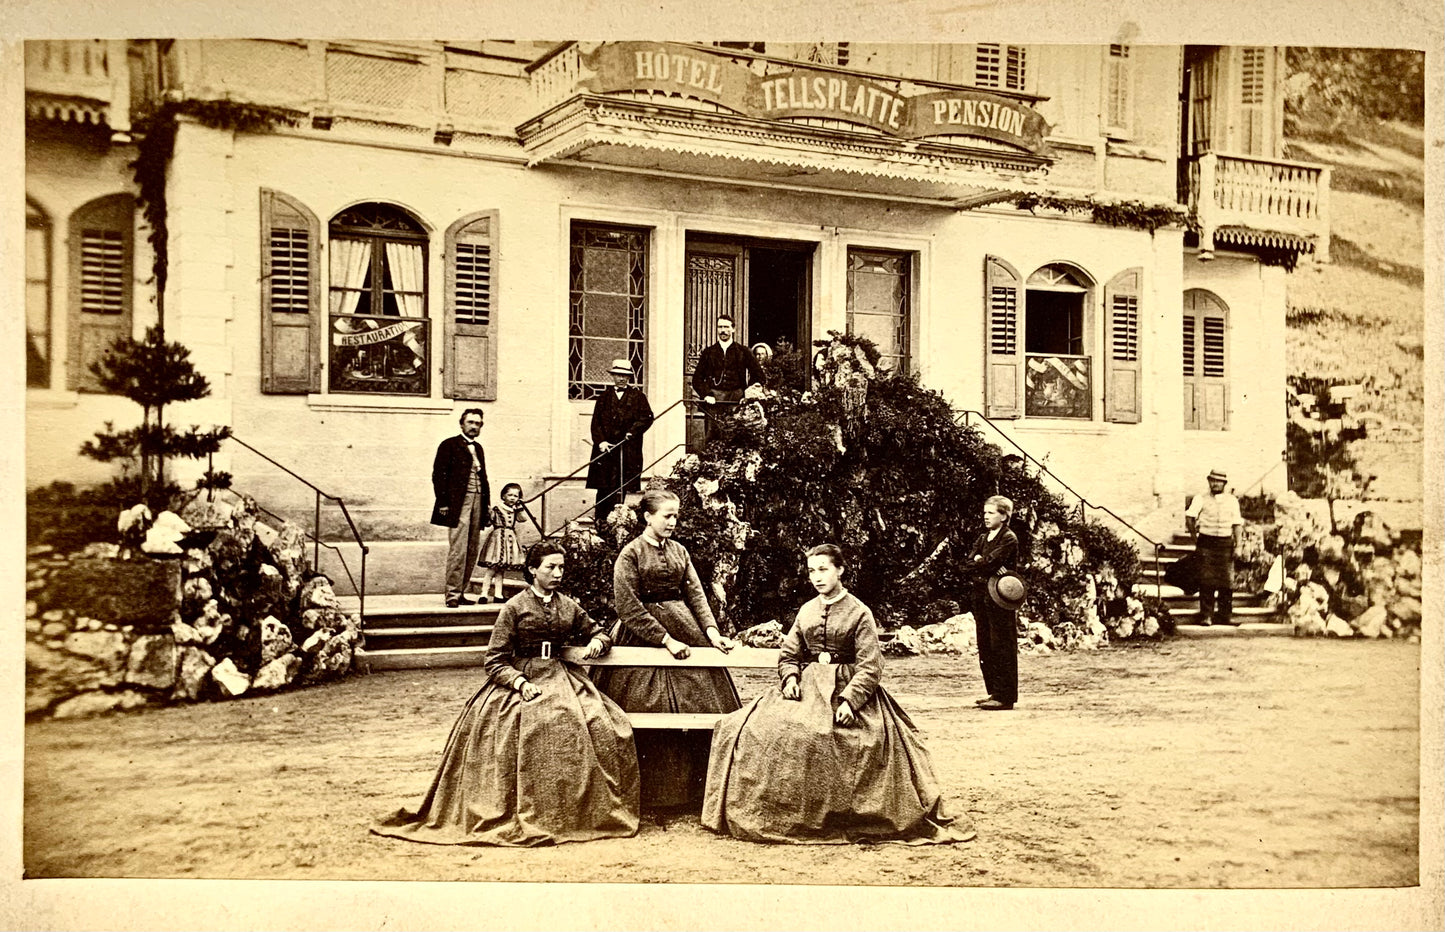 1860 Lago dei Quattro Cantoni, album souvenir, 10 primissime foto all'albumina, Svizzera 